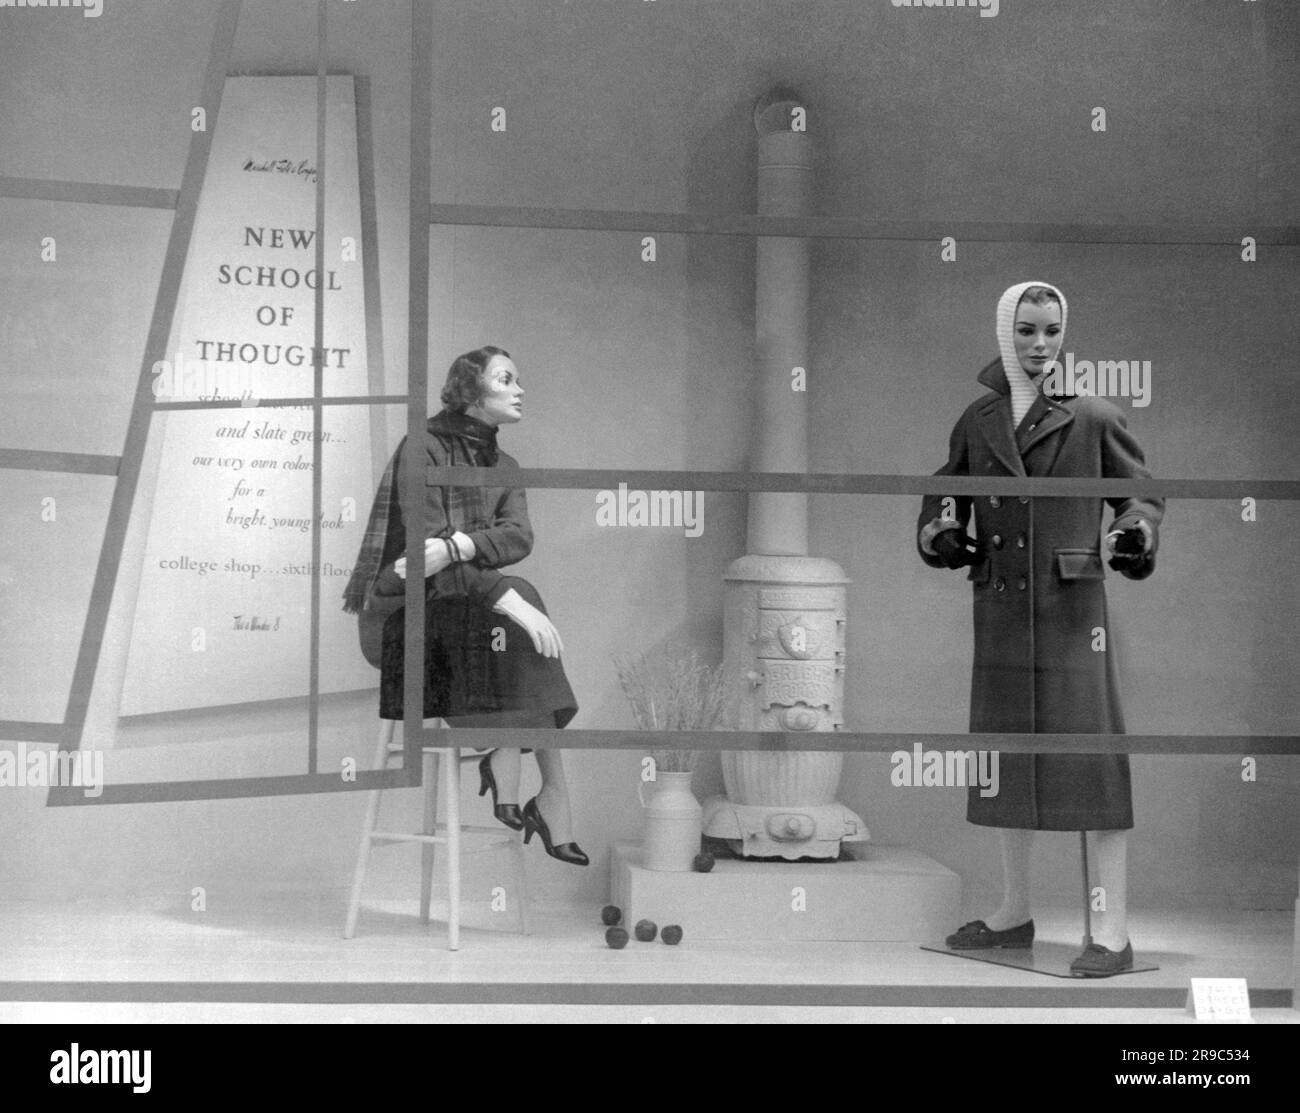 Chicago, Illinois: 11. August 1956 Ein Schaufensterbummel im Kaufhaus von Marshall Field während der State Street Days, in dem die „New School of Think“ für College-Käufer im Vergleich zu den vergangenen Tagen gezeigt wird, wie der alte Kohlewärmer beweist. Stockfoto